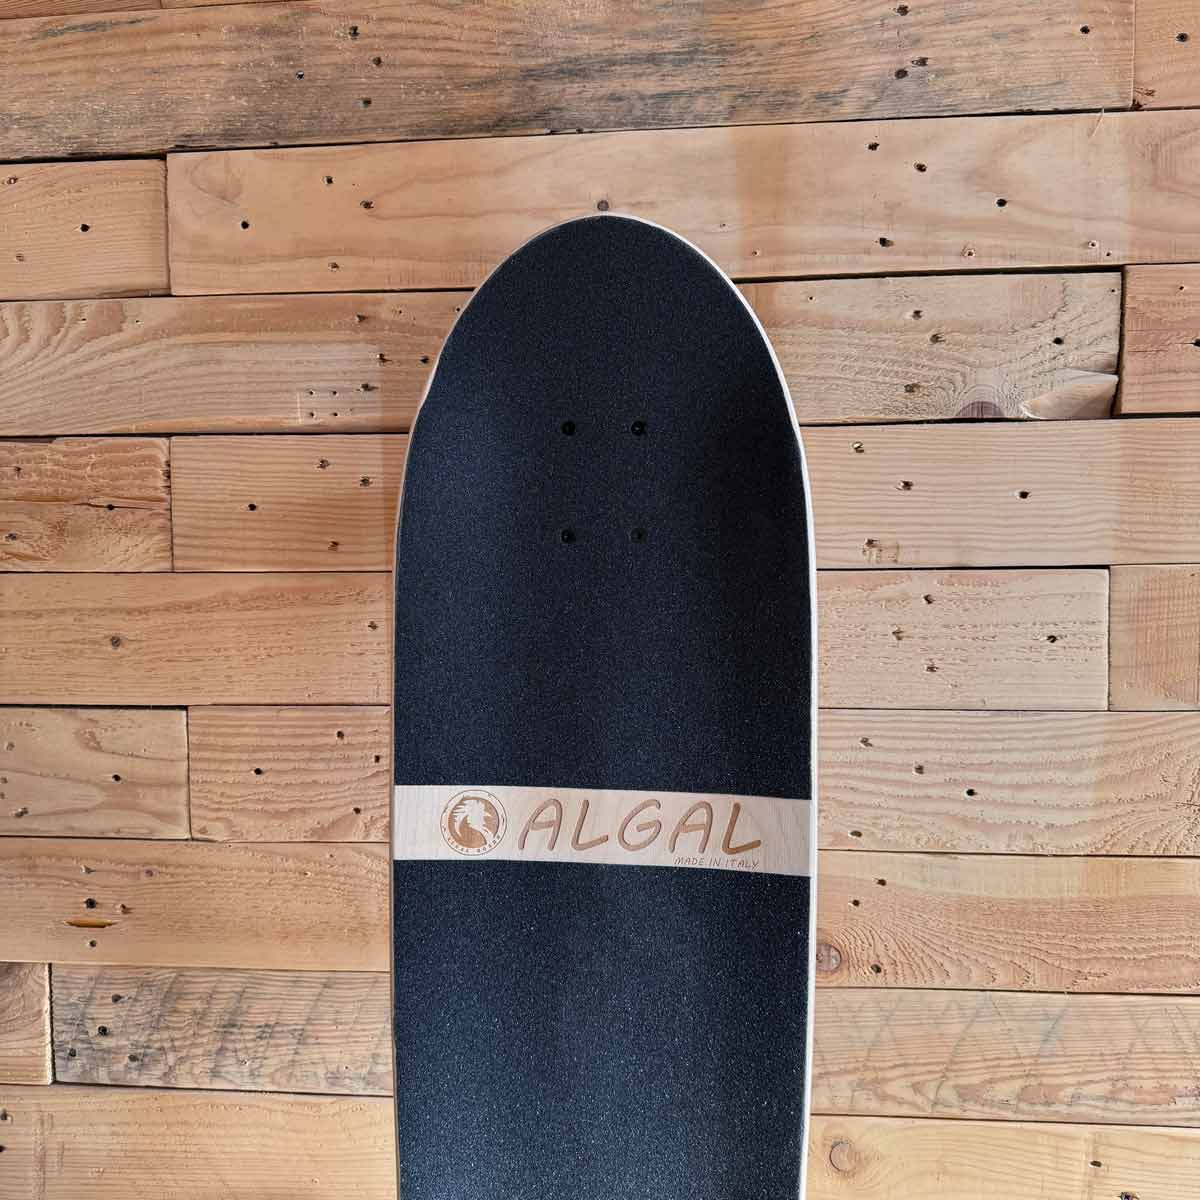 Cruiser Skateboard Icy 2024 by Algal Board